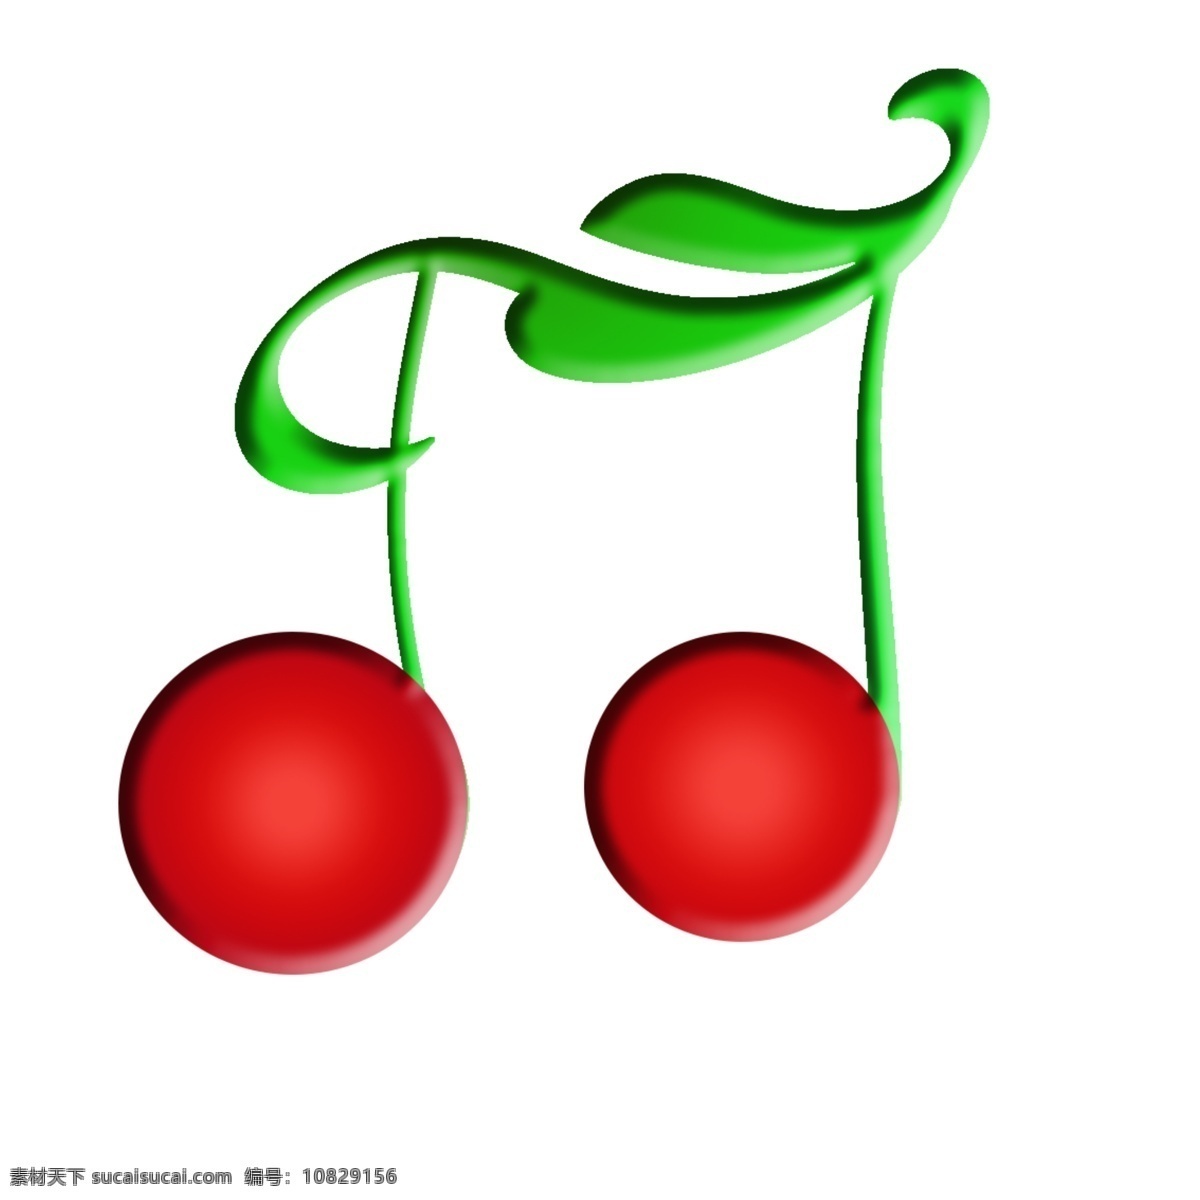 樱桃 音符 cherry key 红和绿 水果 logo 简洁 车厘子